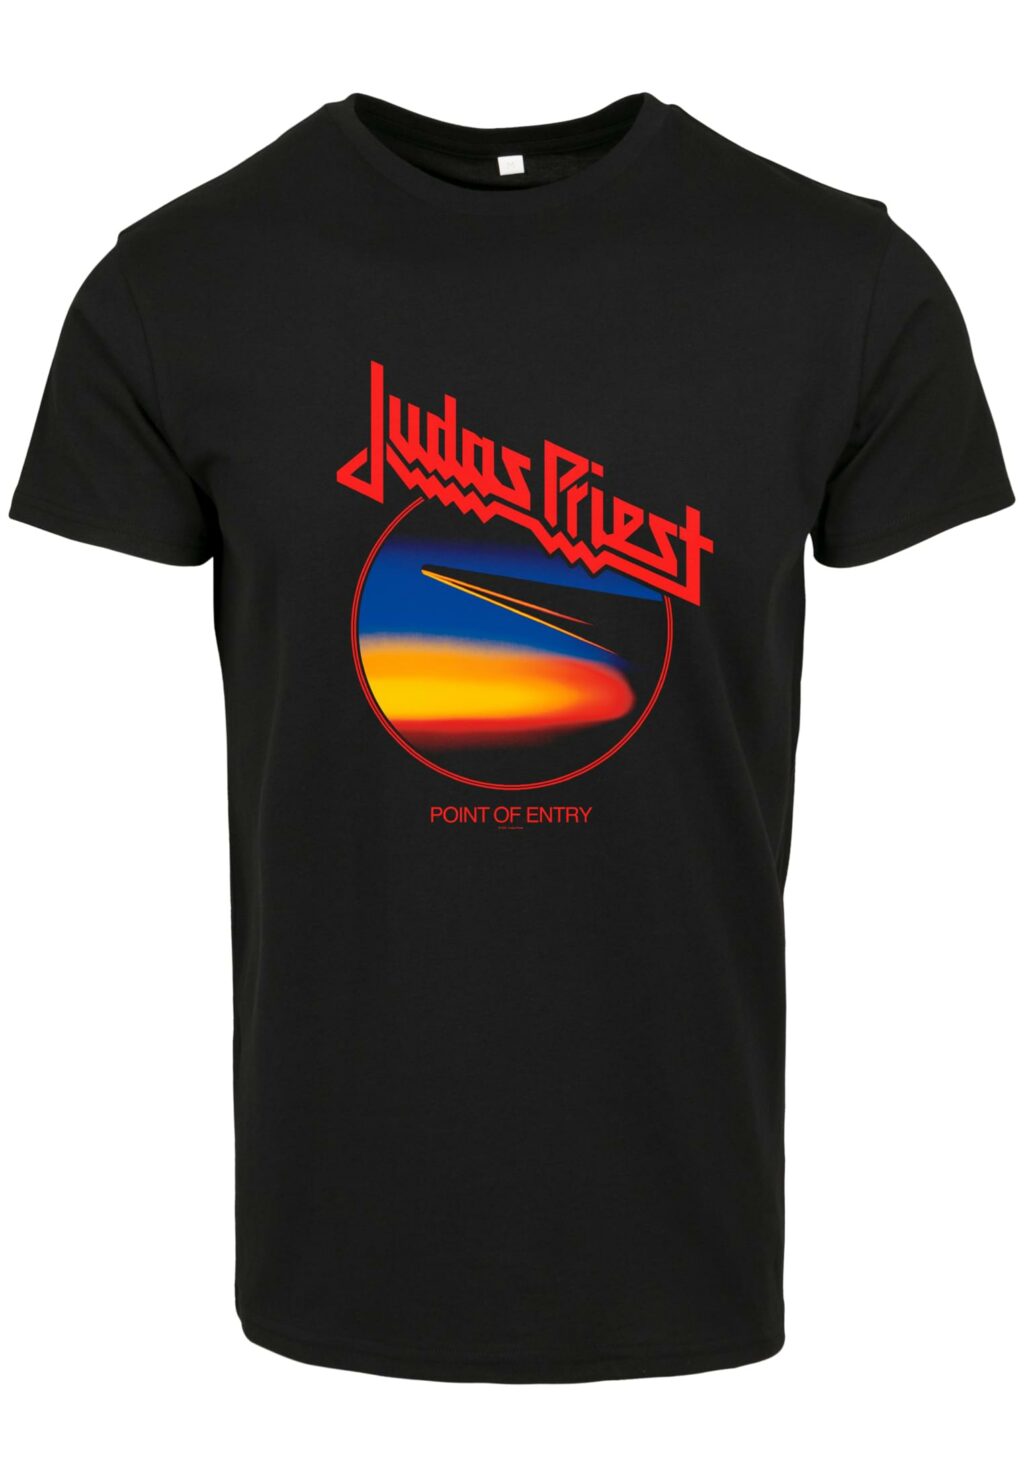 Judas Priest Point Of Entry Anniversary Tee black MC785